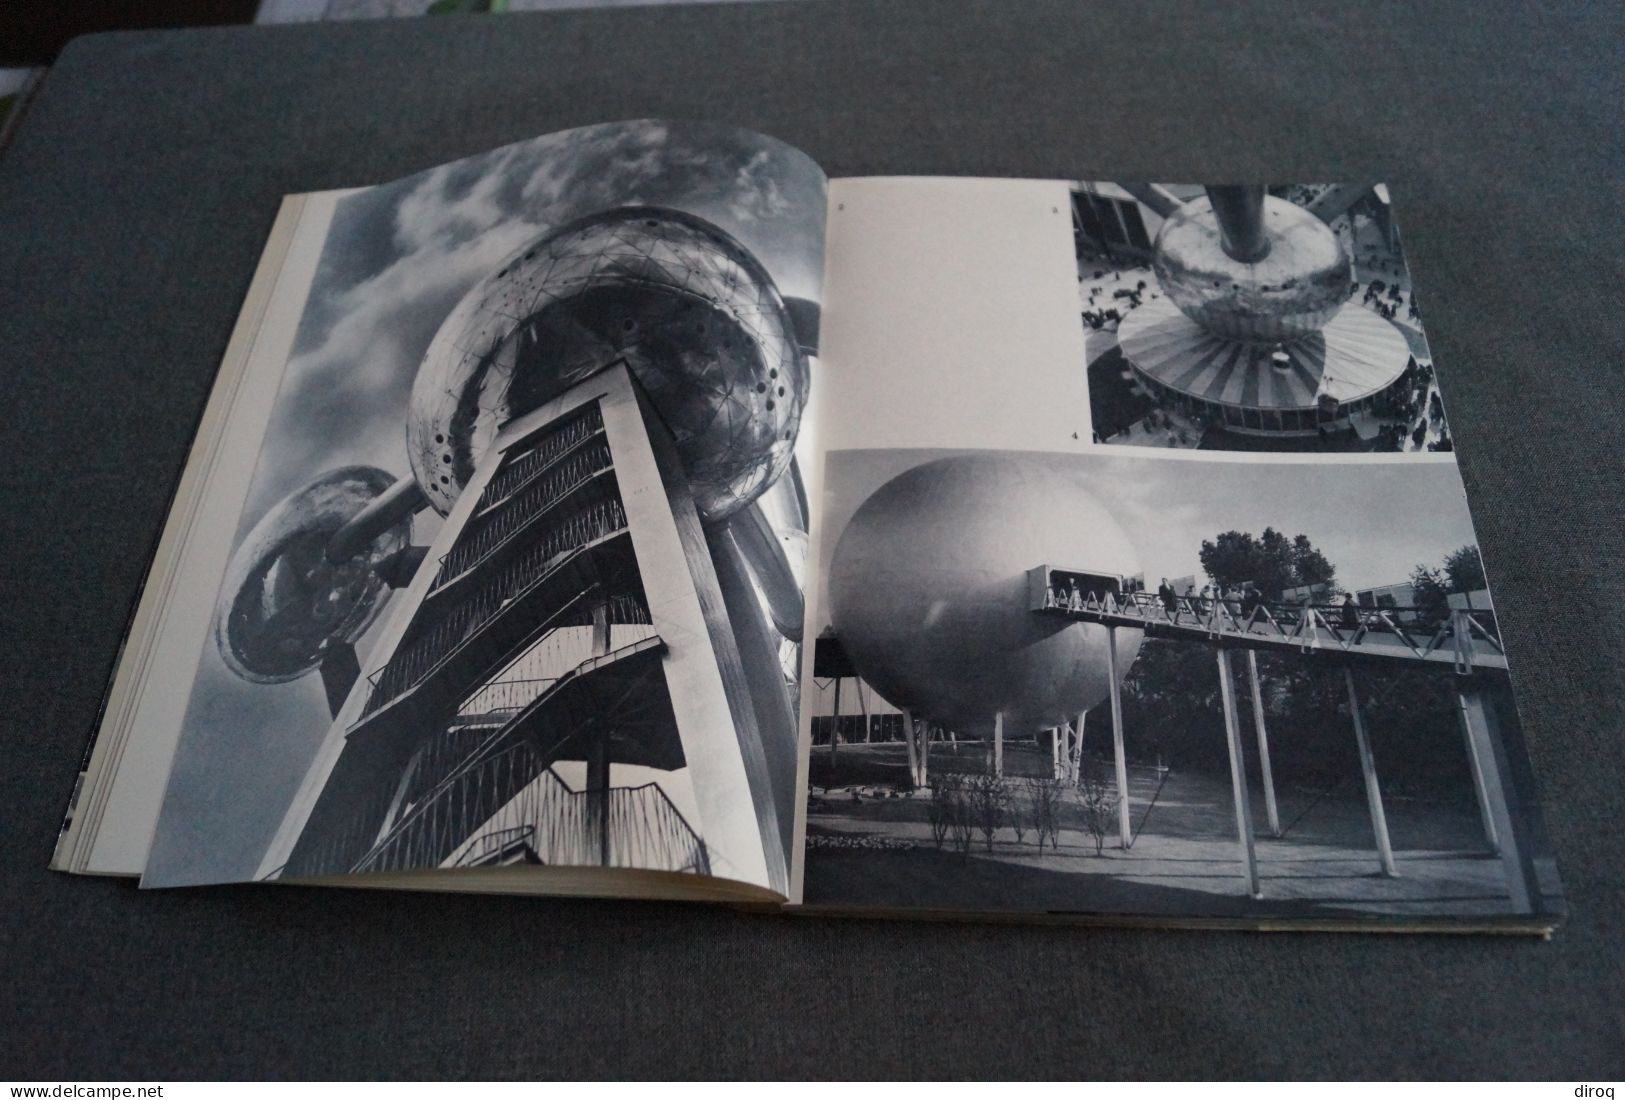 Images De L' Expo 58, Bruxelles - Edition Charles Dessart,87 Pages,27 Cm. Sur 21 Cm - Publicités